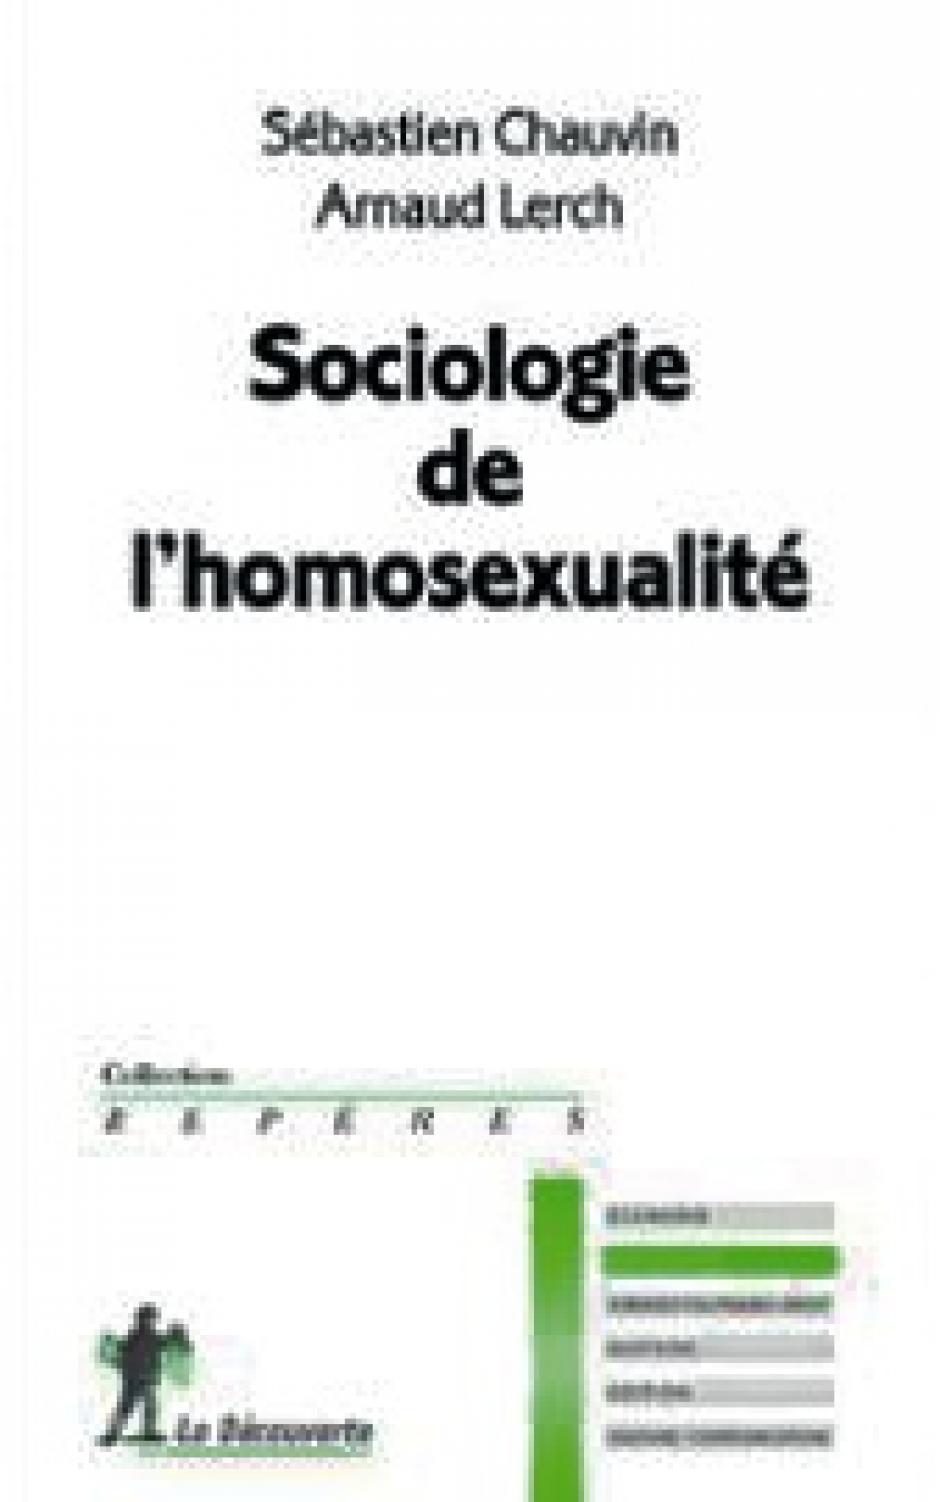 Sociologie de l'homosexualité, Sébastien Chauvin et Arnaud Lerch  